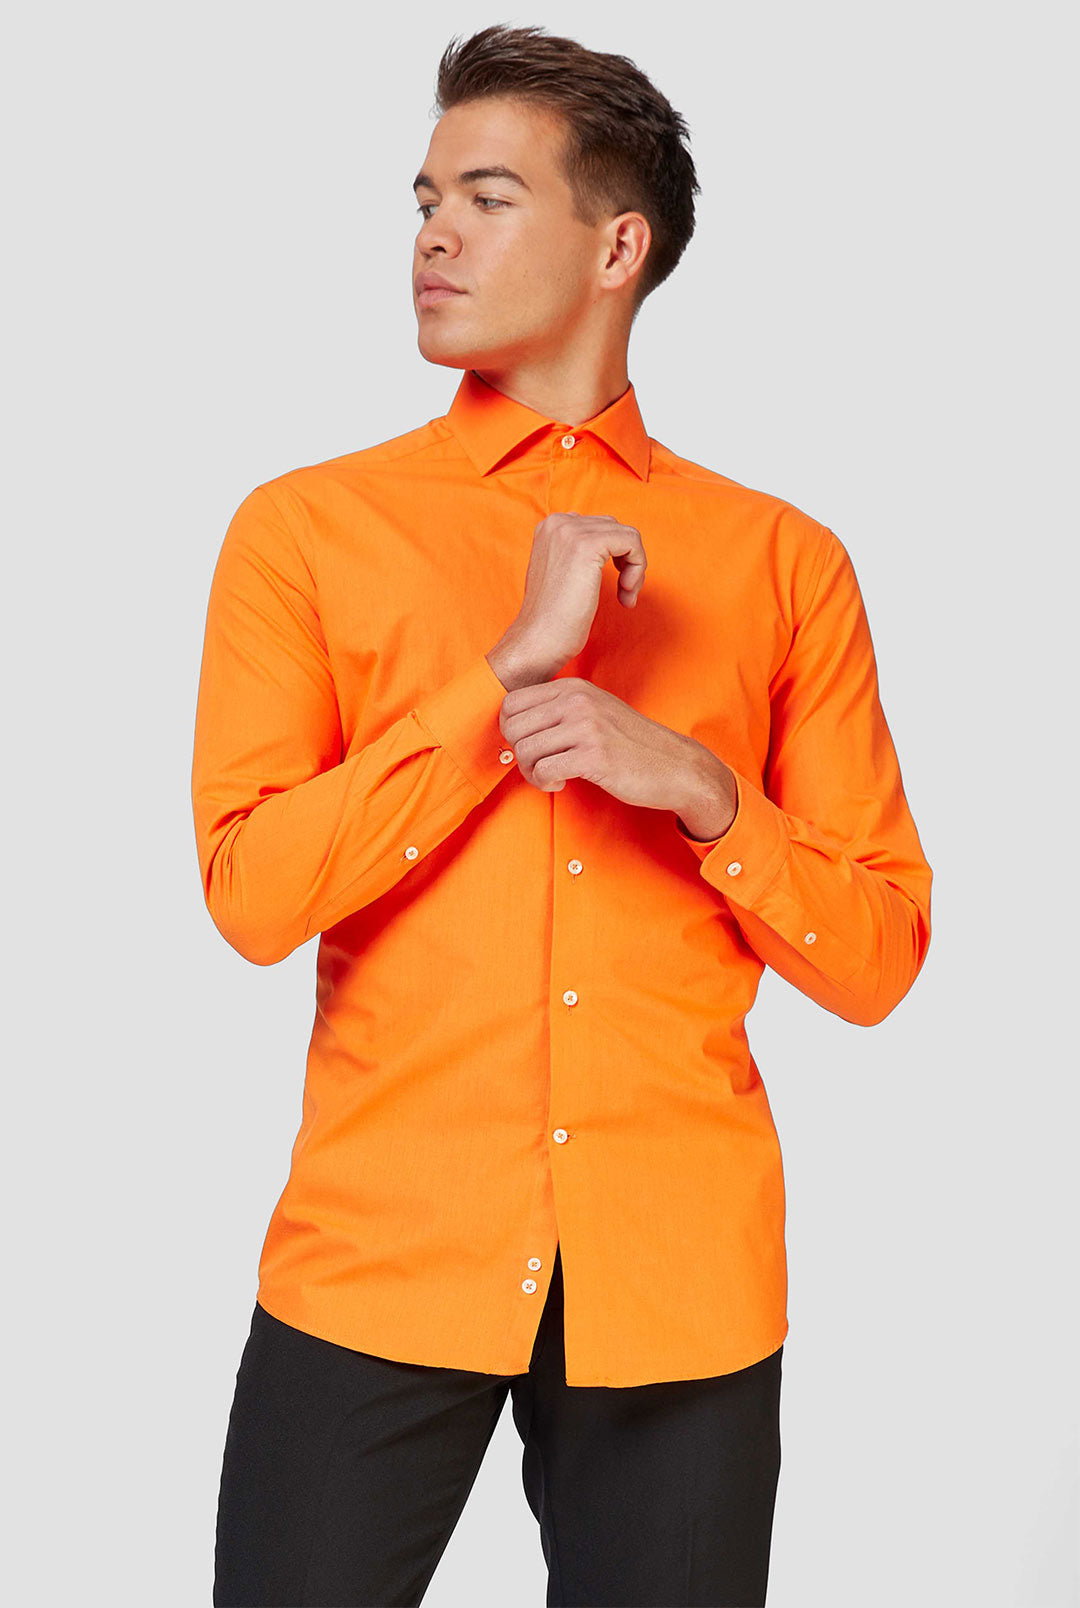 orange dress shirt